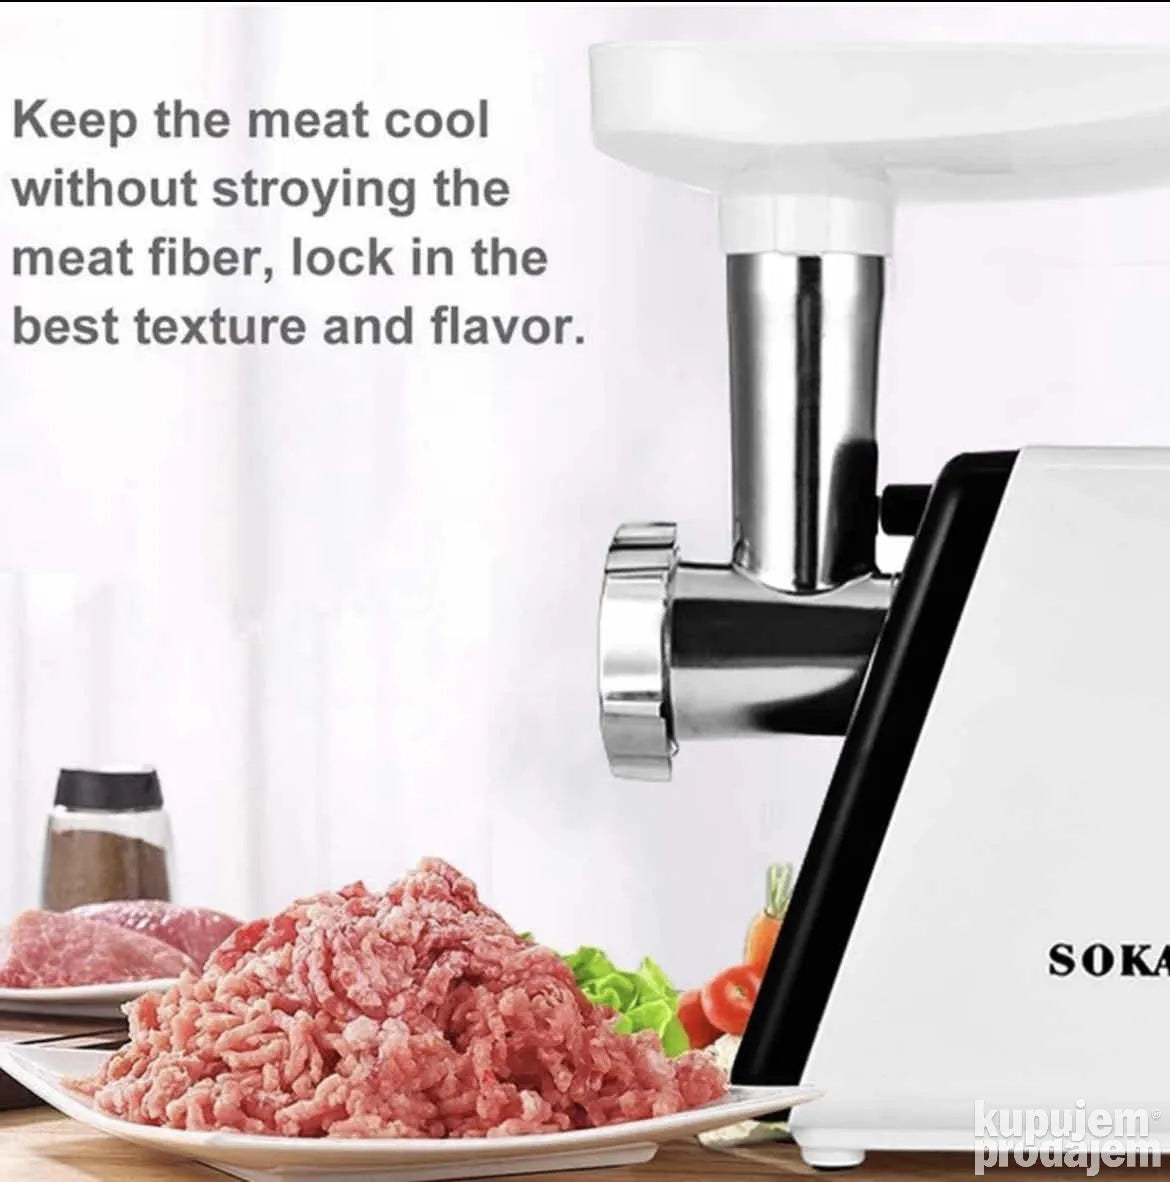 Višenamenska Mašina Mašina za mlevenje mesa Sokany - Višenamenska Mašina Mašina za mlevenje mesa Sokany